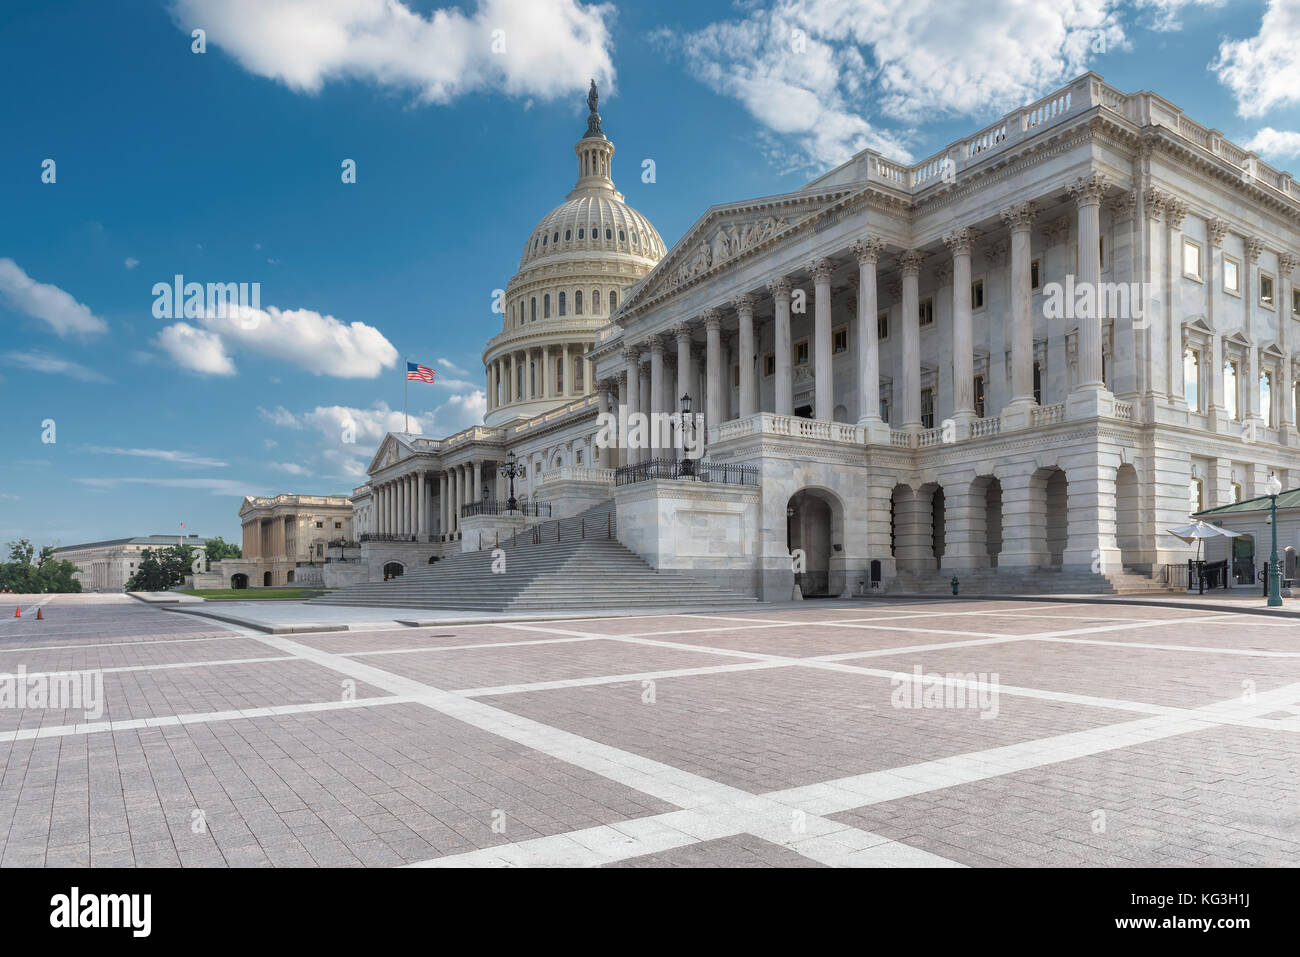 El edificio del Capitolio de EE.UU en día soleado - Washington DC, Estados Unidos Foto de stock